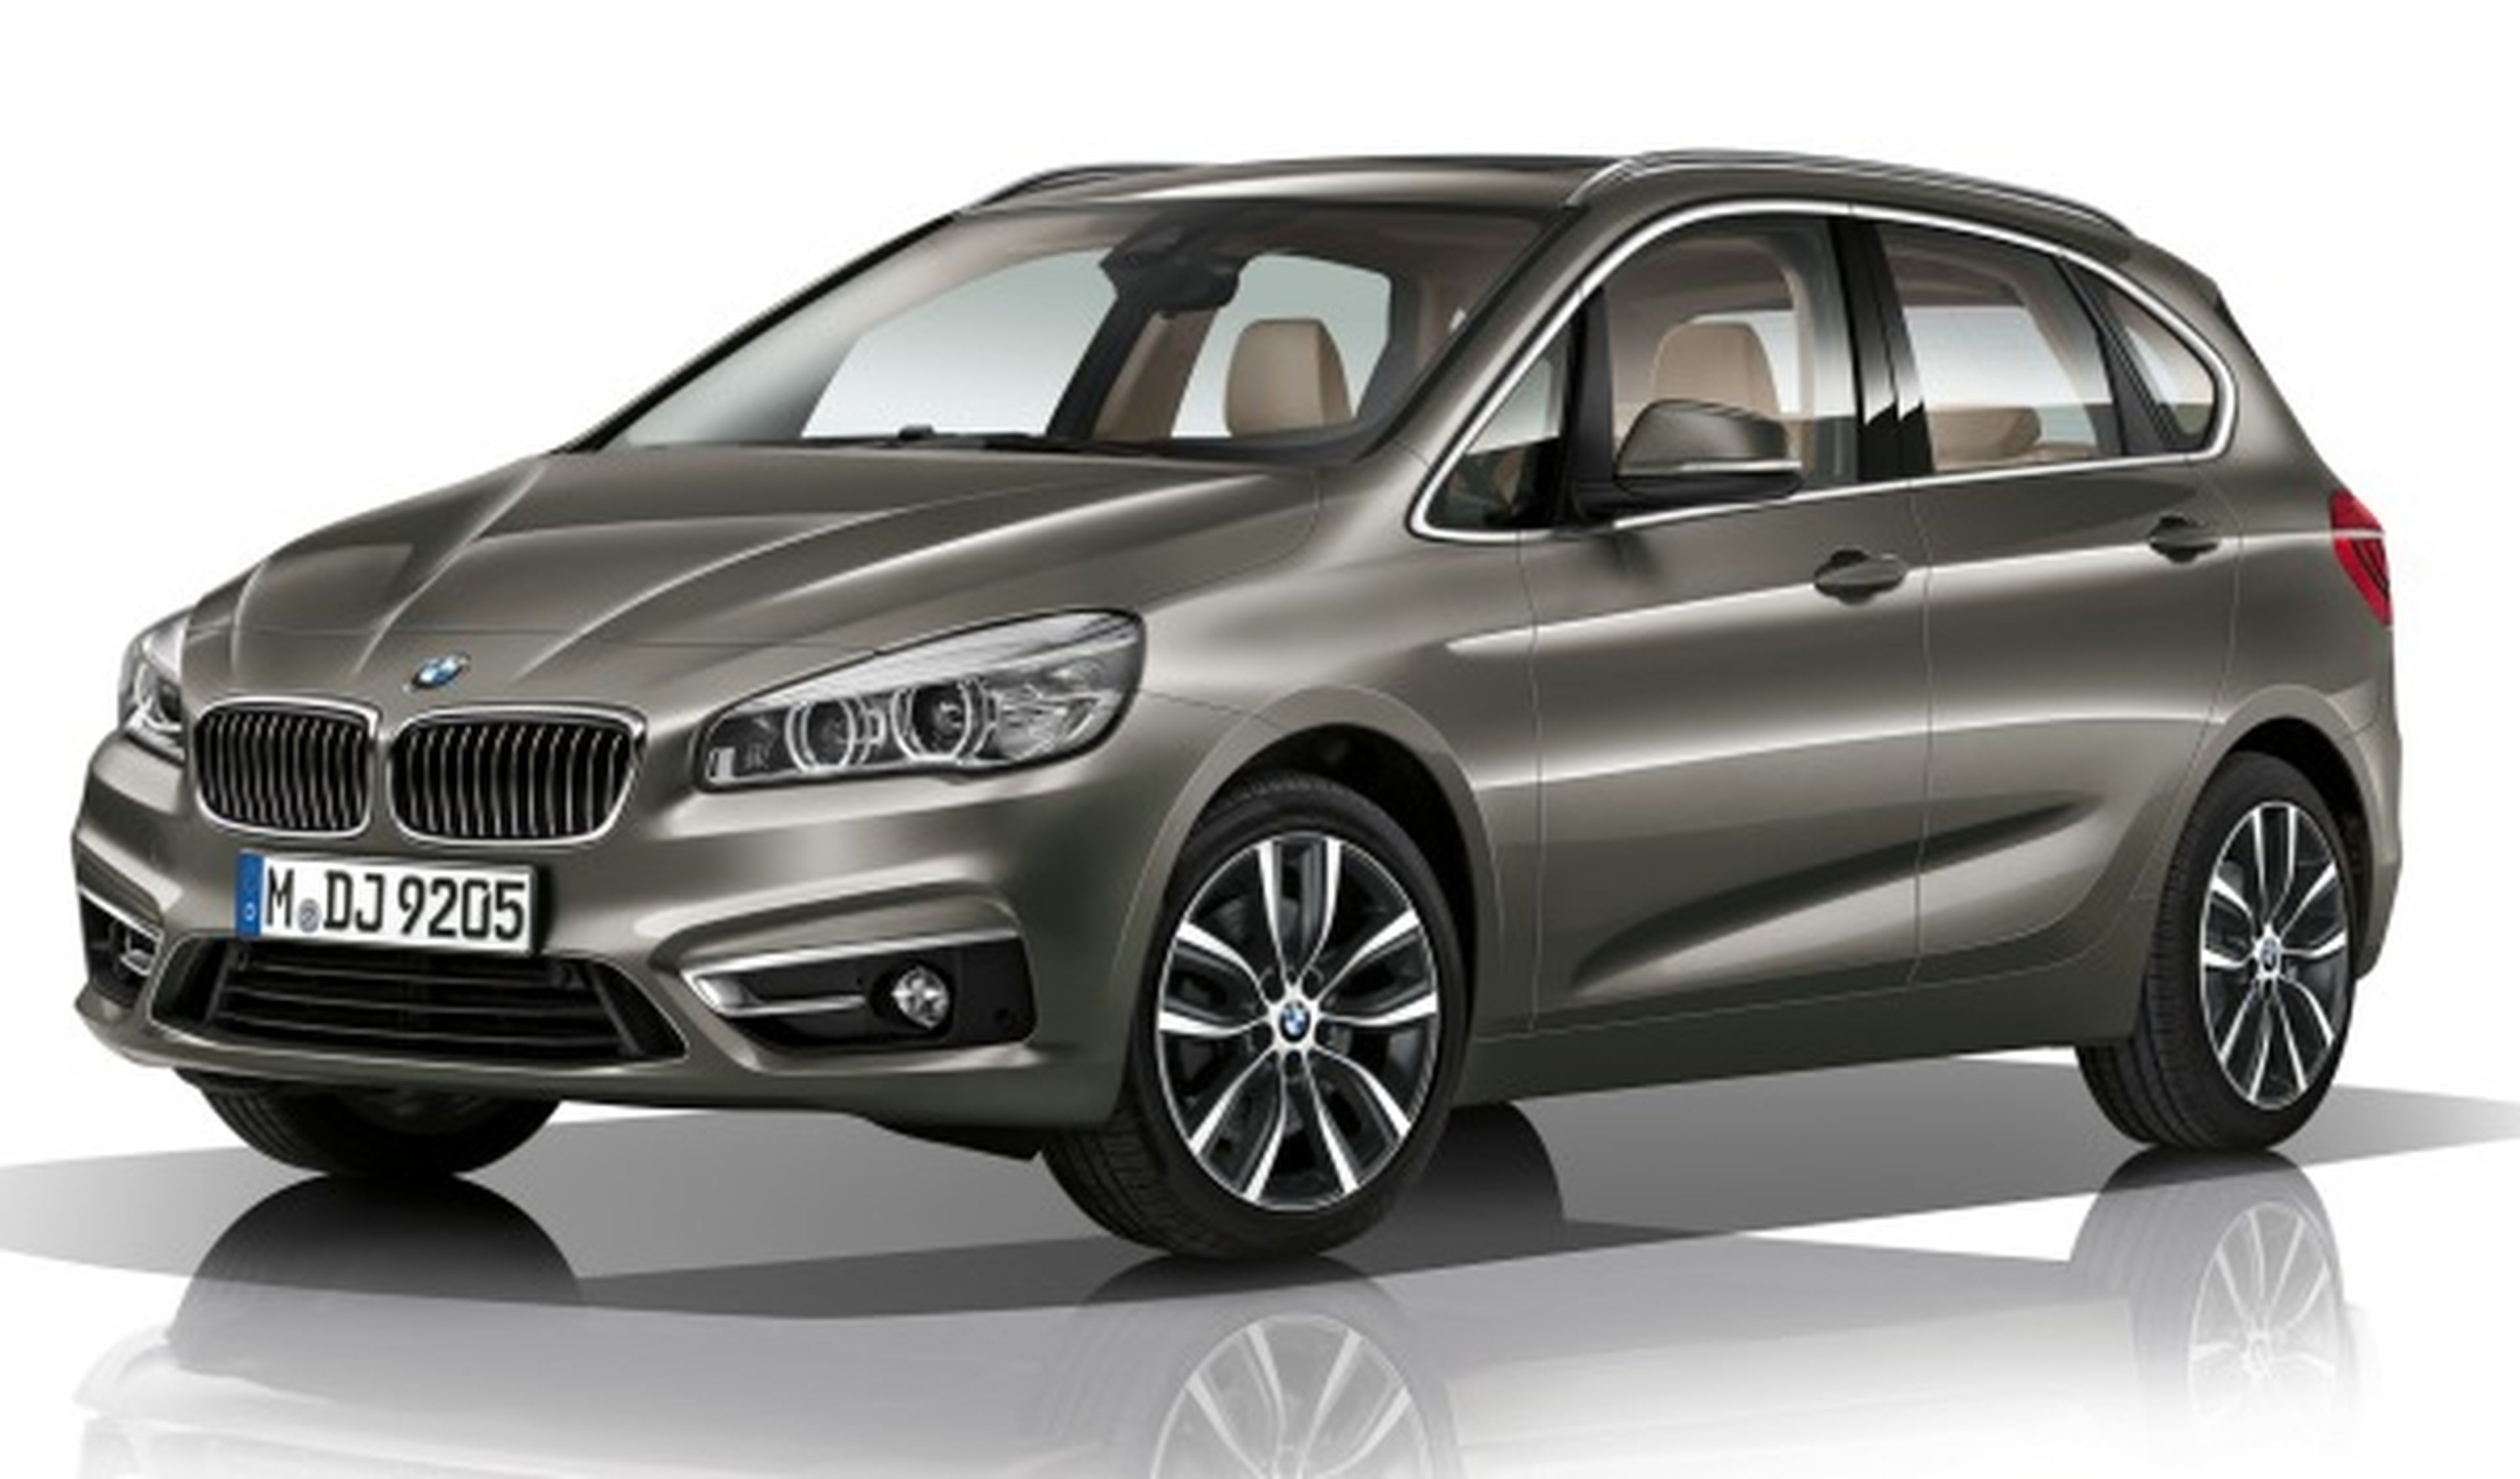 Precios BMW Serie 2 Active Tourer: desde 28.500 euros